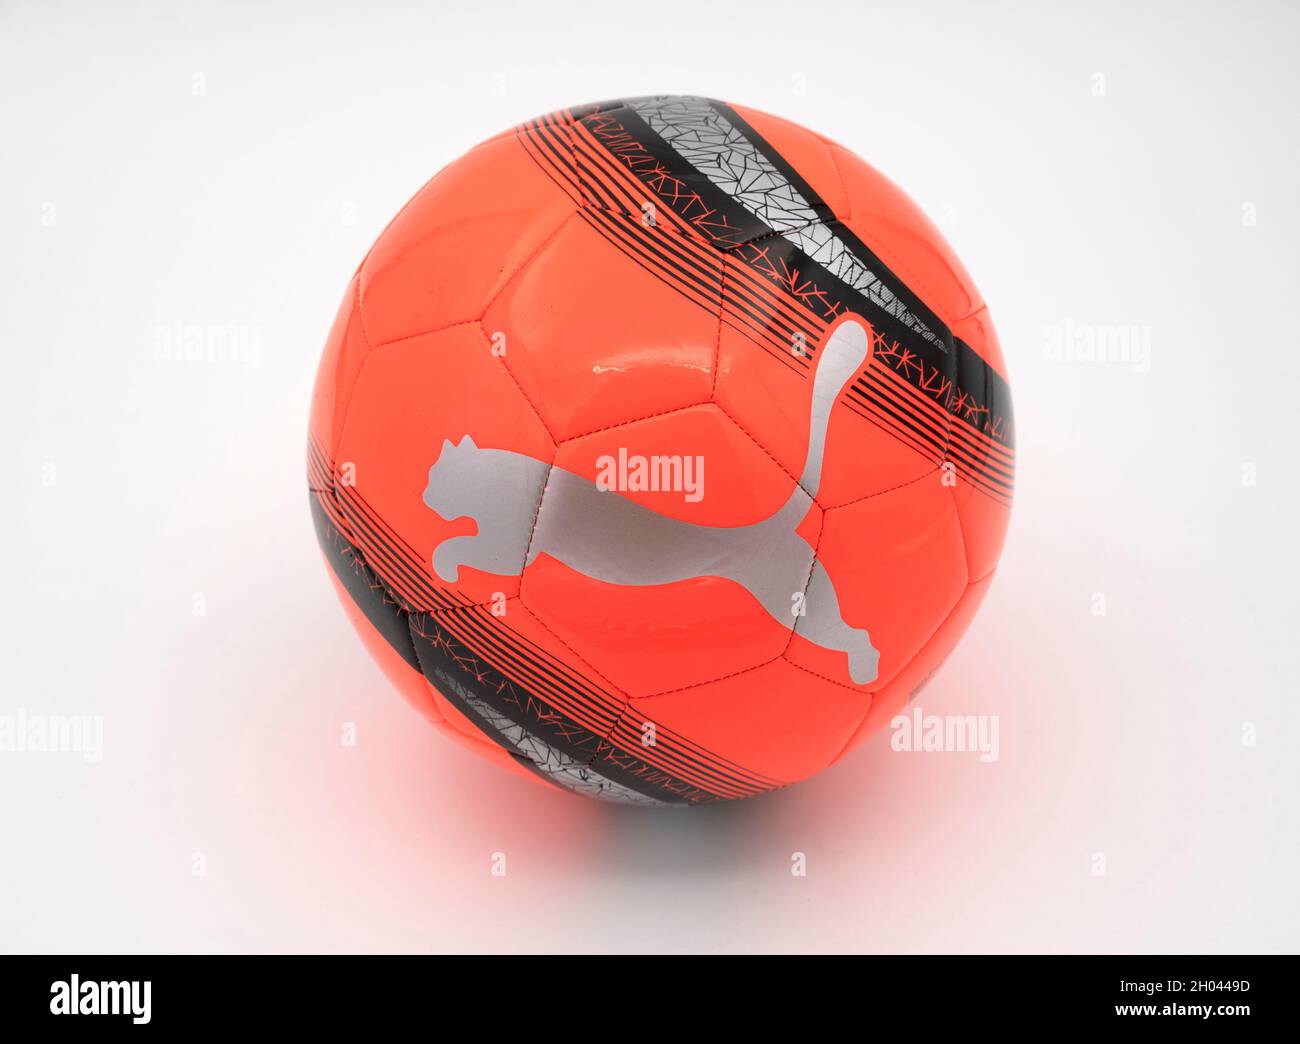 بين جيليك اختزال خلق puma orange soccer ball - xlsalud.com